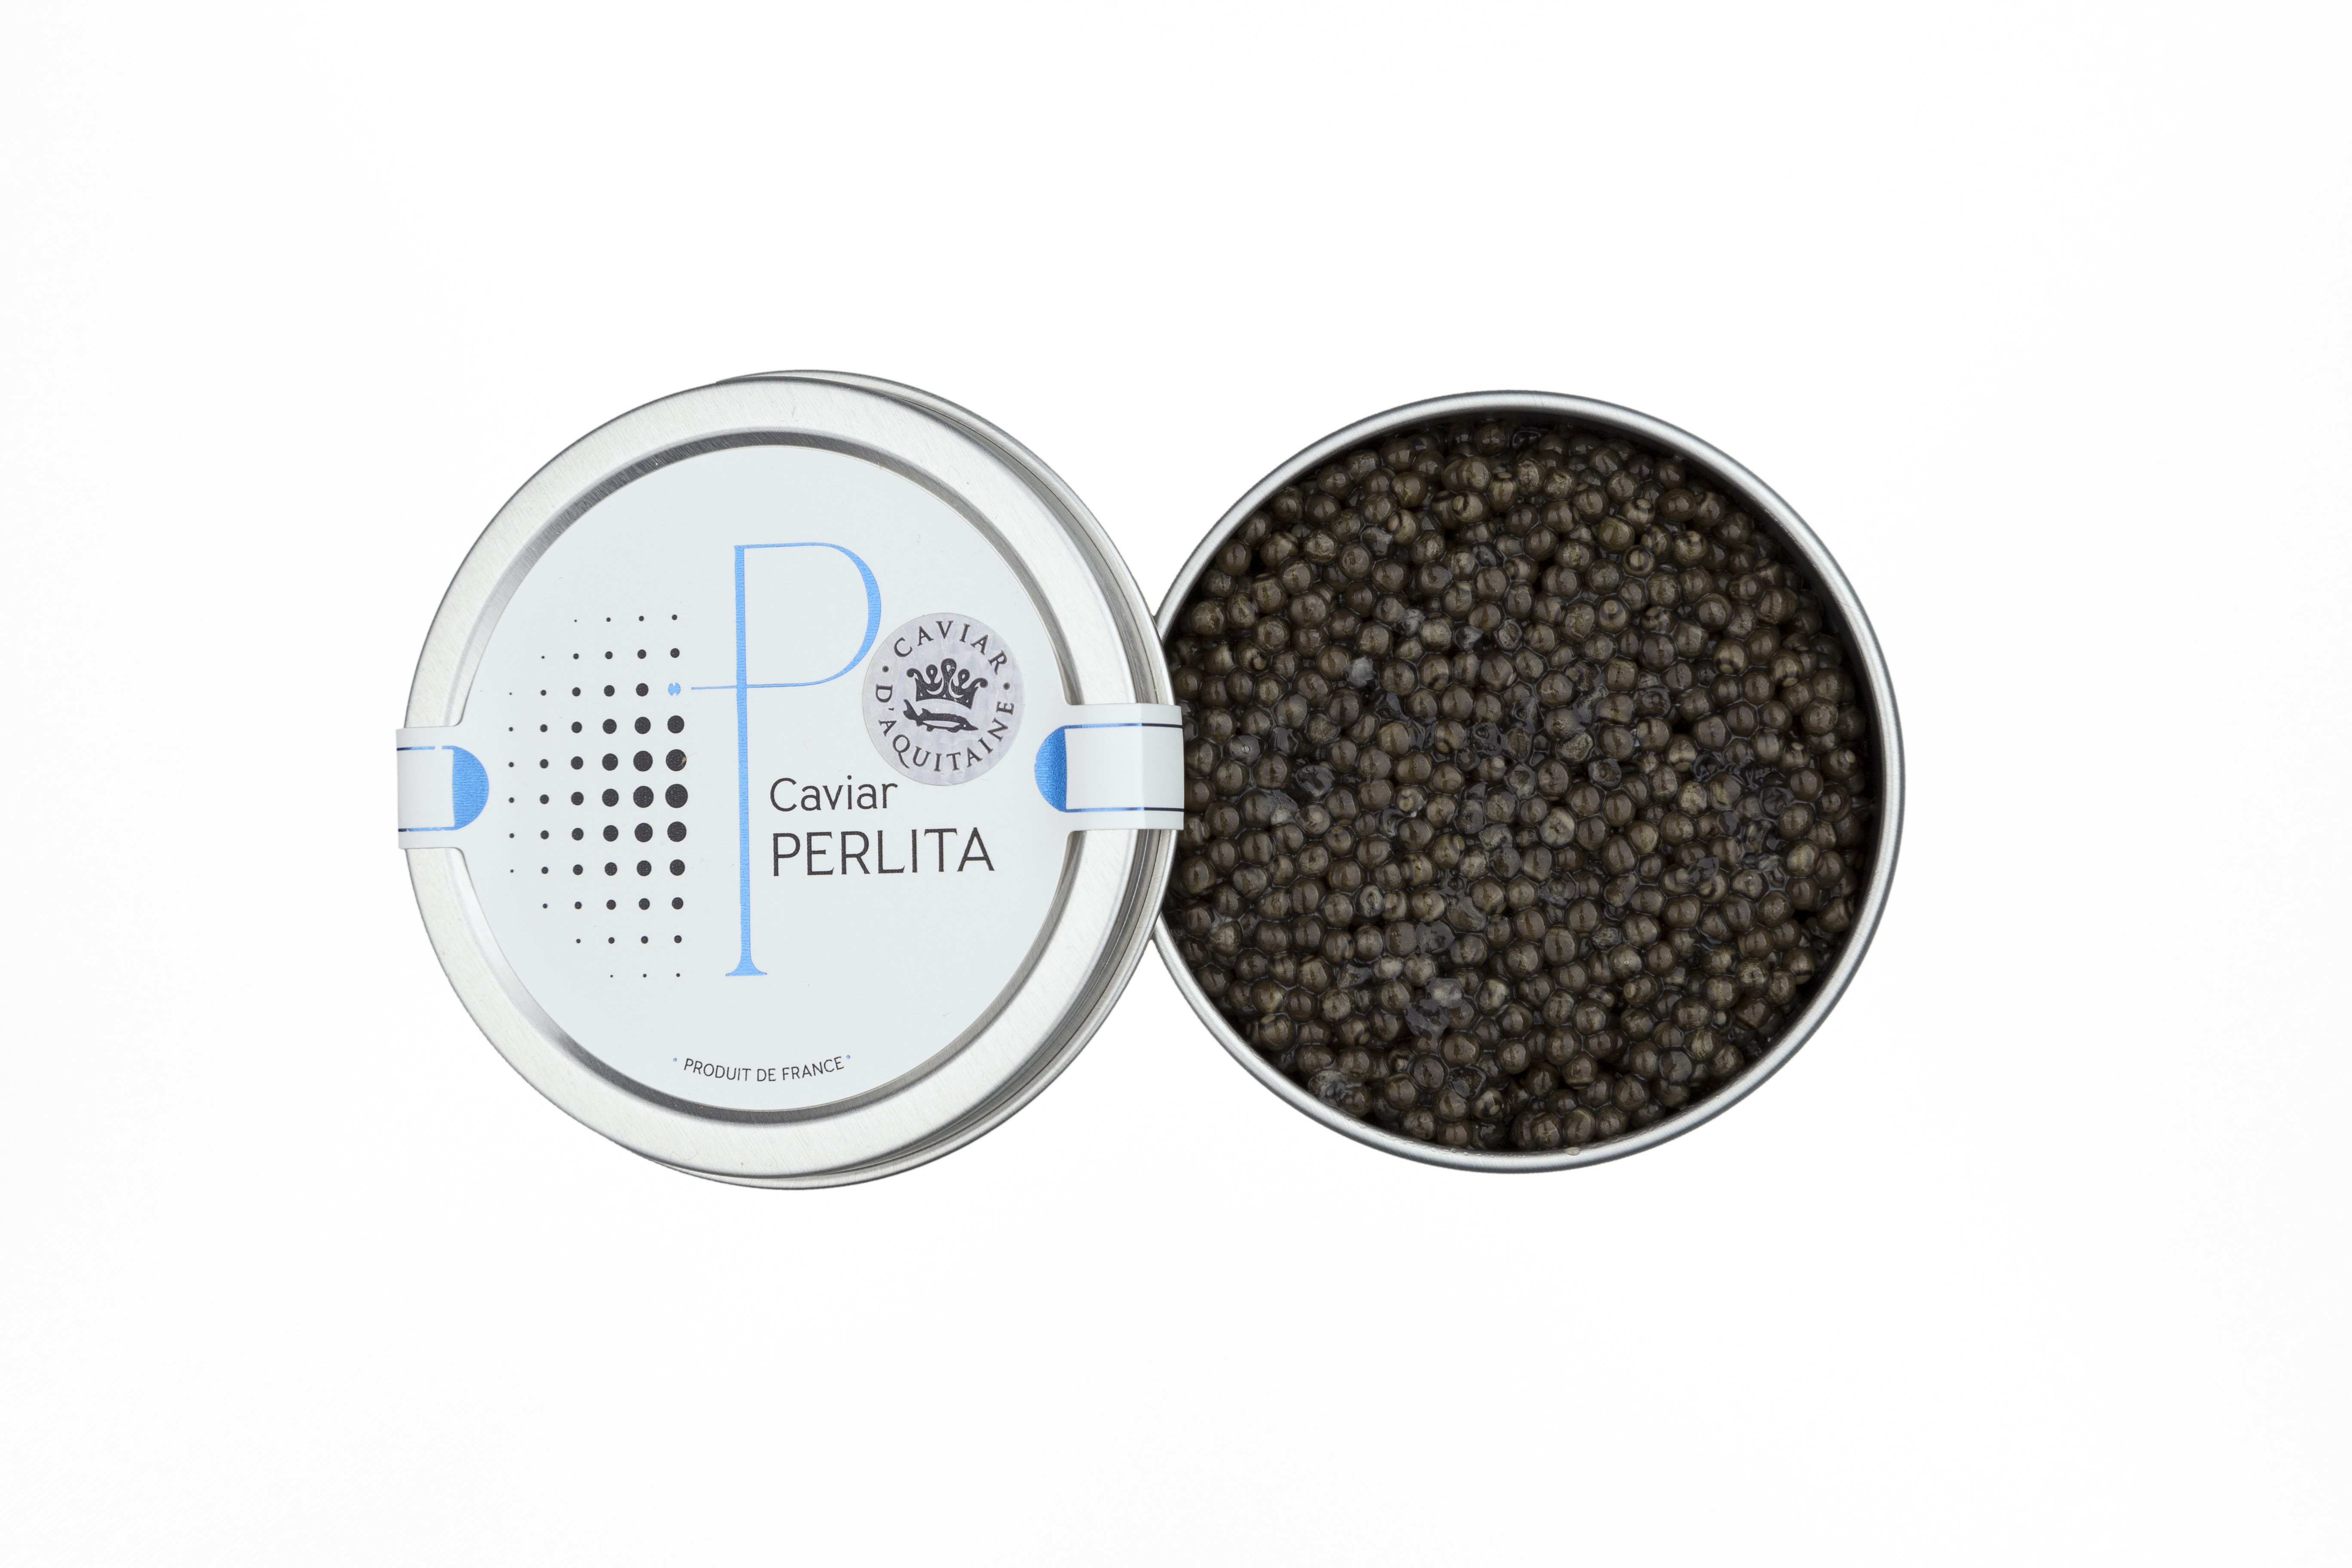 Tarama au caviar français - 90g - Caviar Perlita